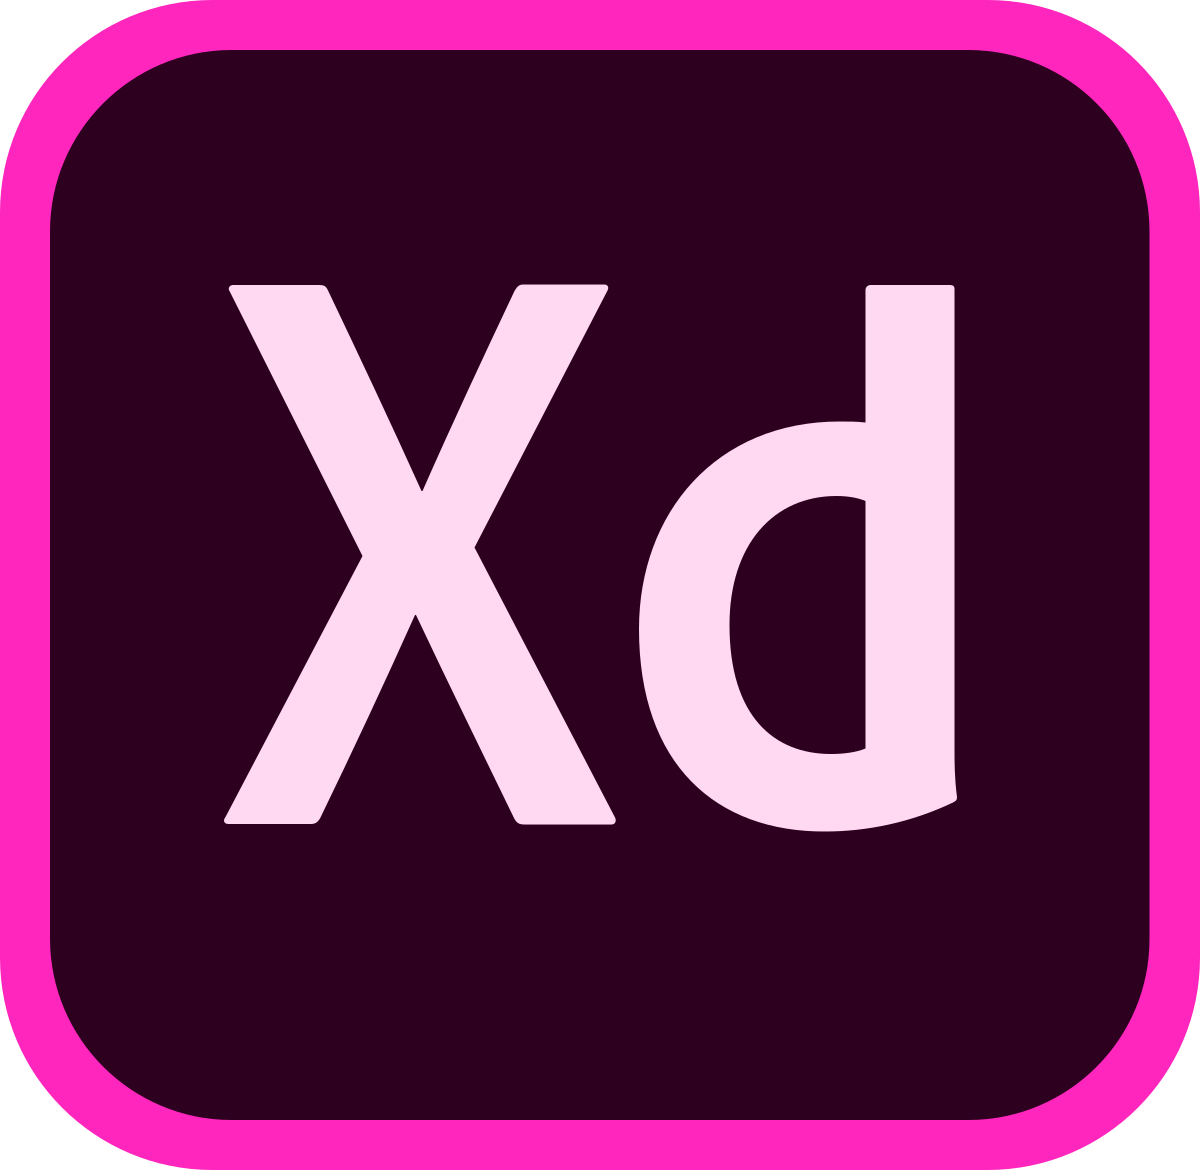 Adobe CC Logo - Adobe XD